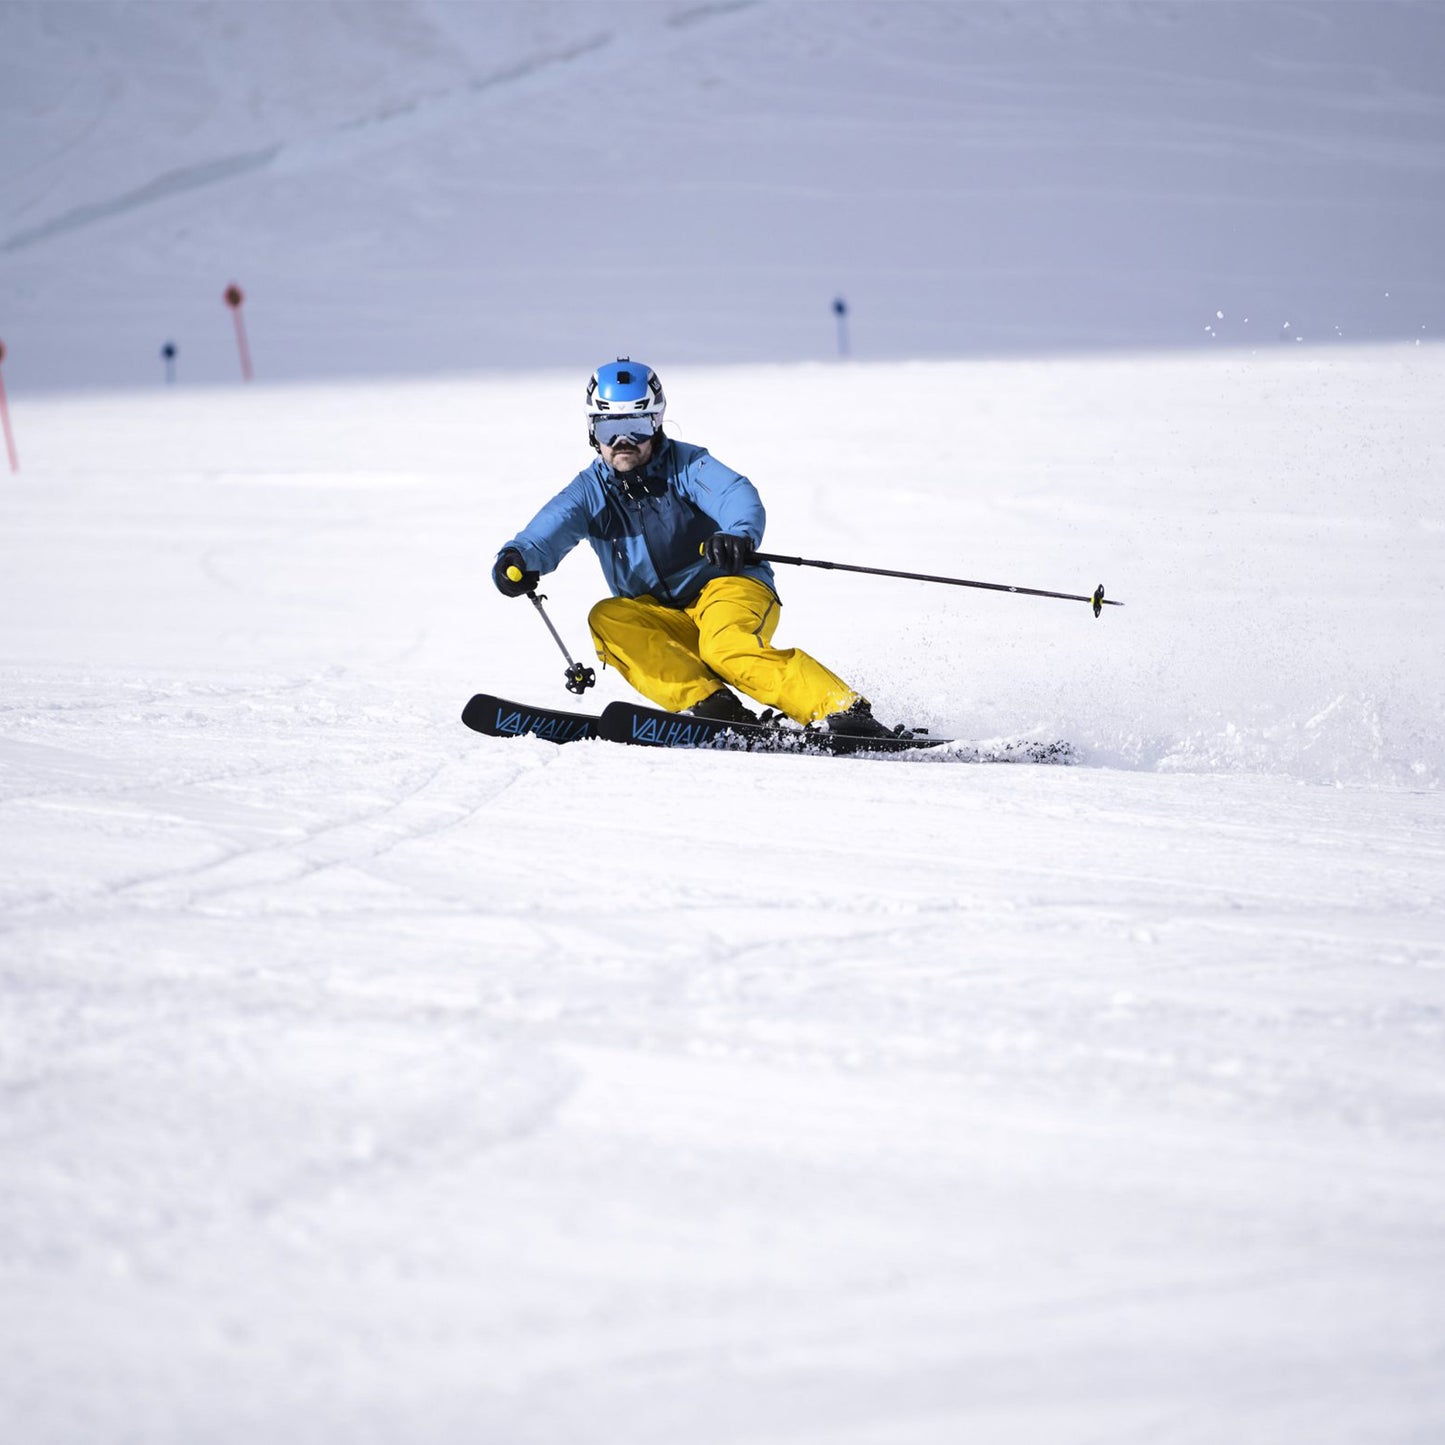 Unsere Auswahl an Skiern umfasst eine Vielzahl von Optionen, die für Anfänger bis hin zu erfahrenen Profis geeignet sind. Entdecken Sie Alpinski, Freerideski, Tourenski und vieles mehr.